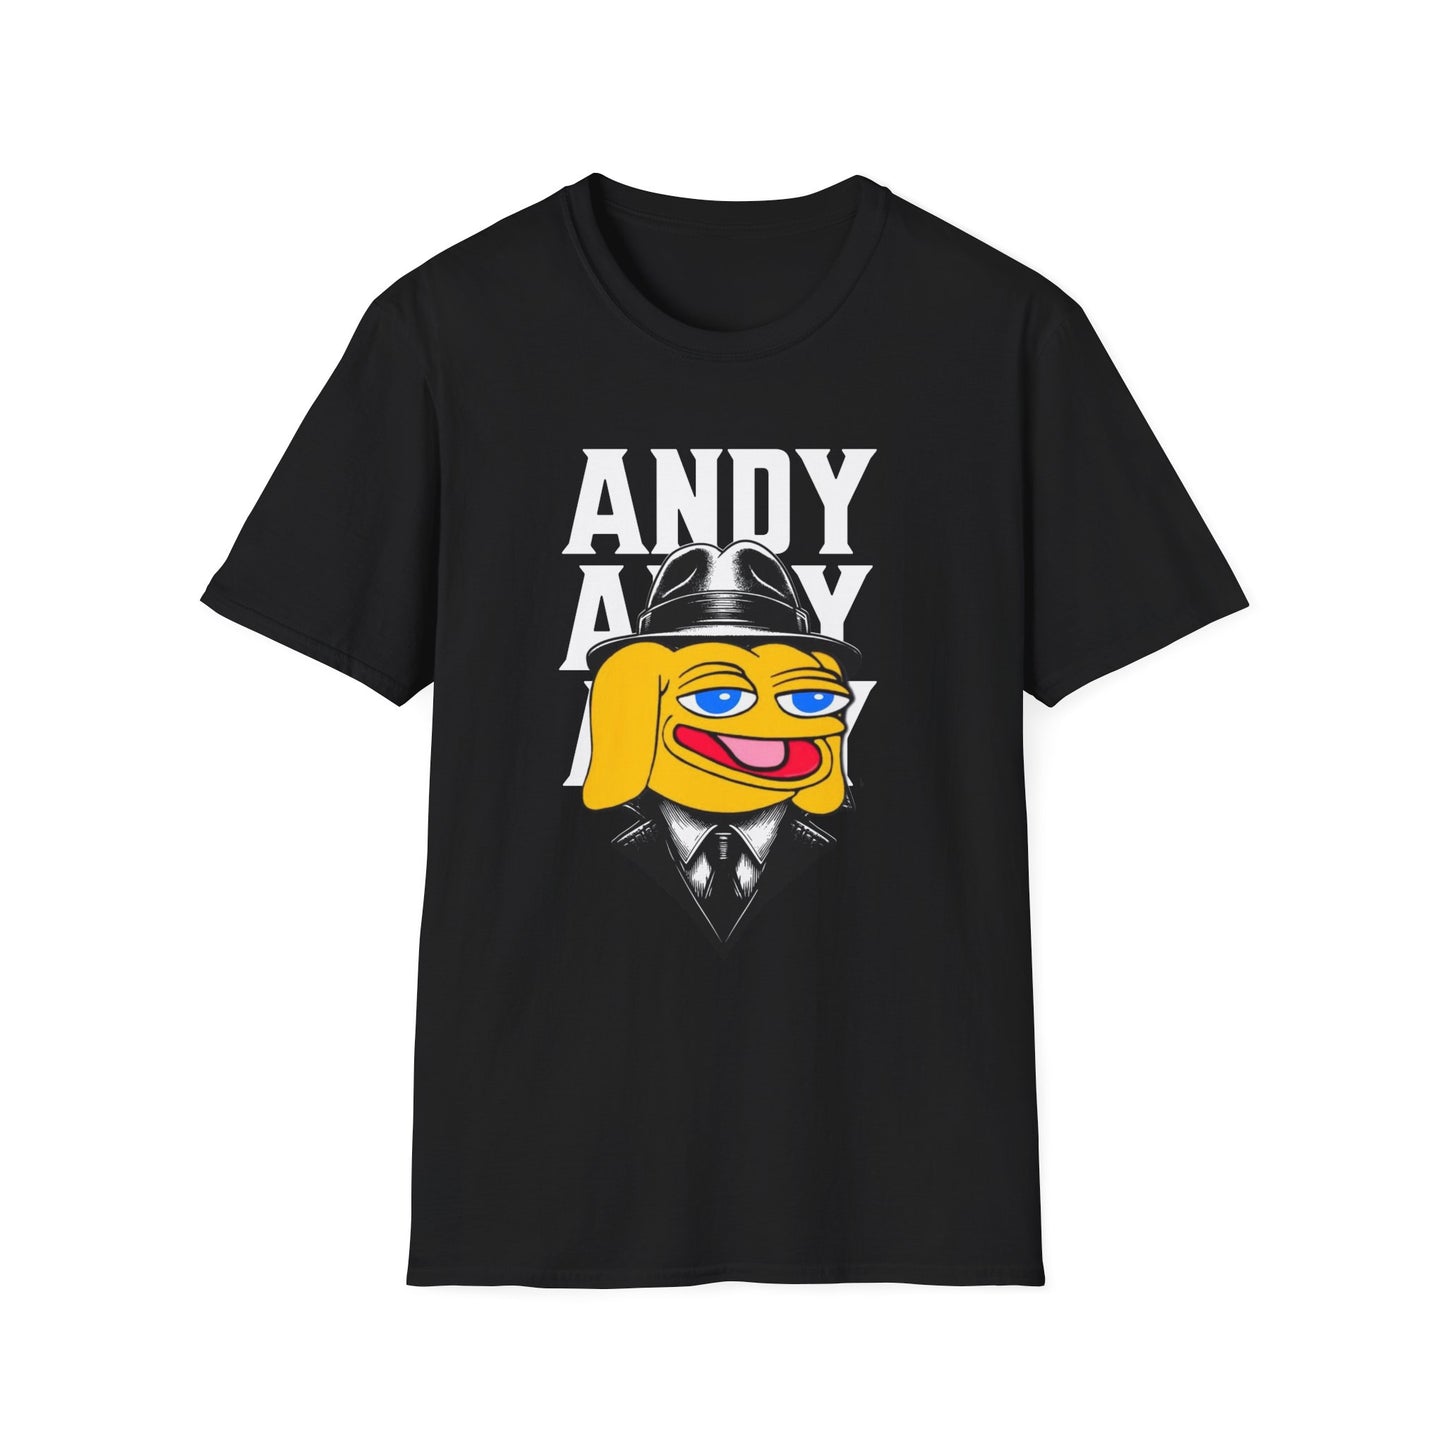 ANDY Boss Unisex T-Shirt